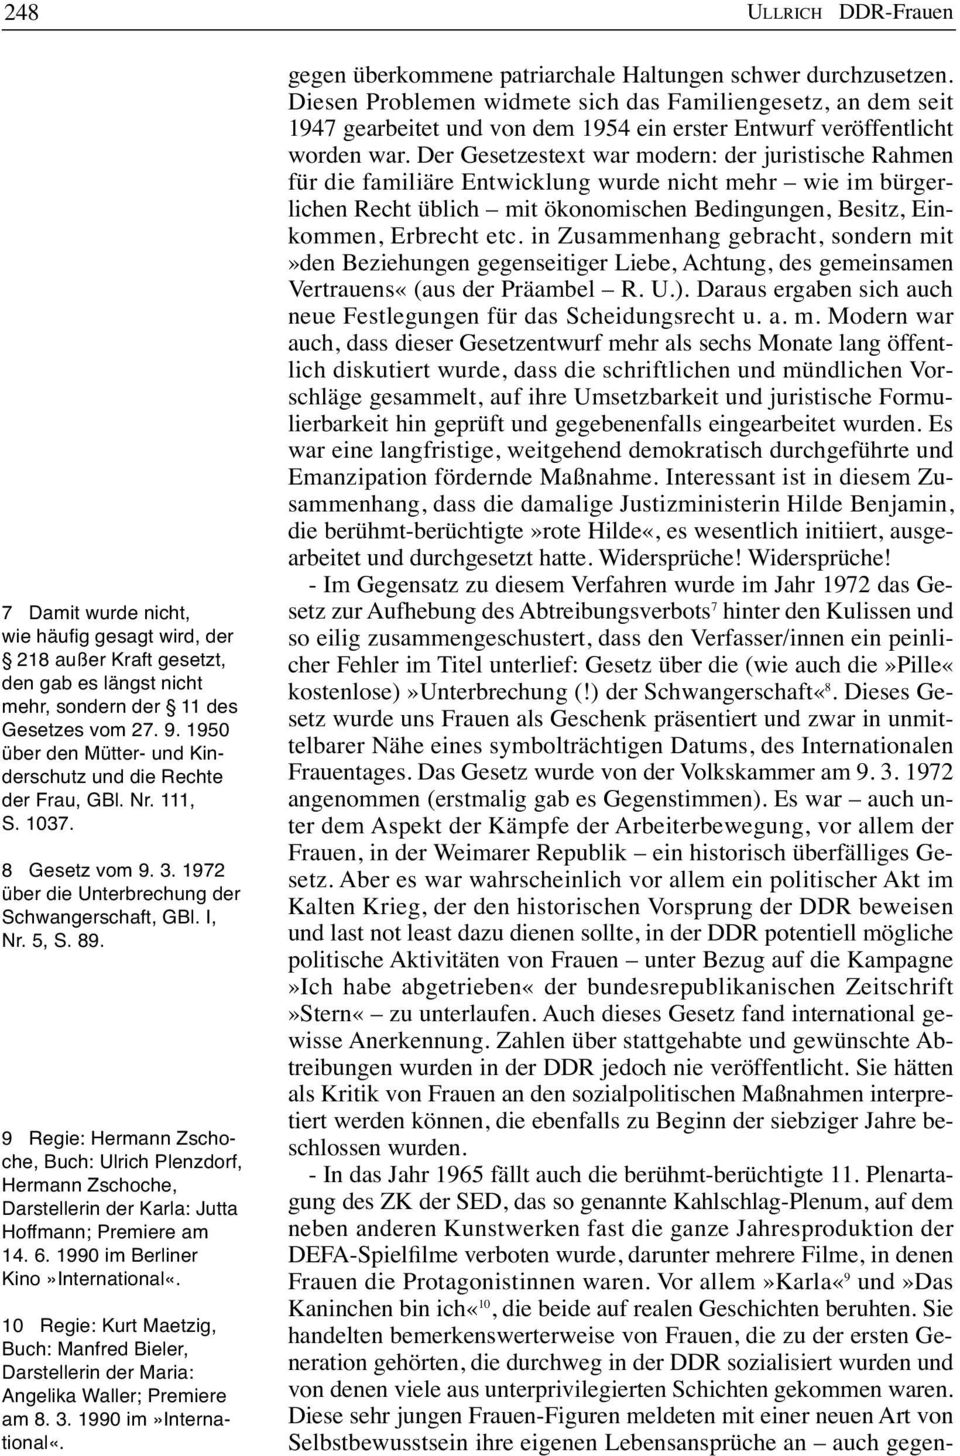 9 Regie: Hermann Zschoche, Buch: Ulrich Plenzdorf, Hermann Zschoche, Darstellerin der Karla: Jutta Hoffmann; Premiere am 14. 6. 1990 im Berliner Kino»International«.